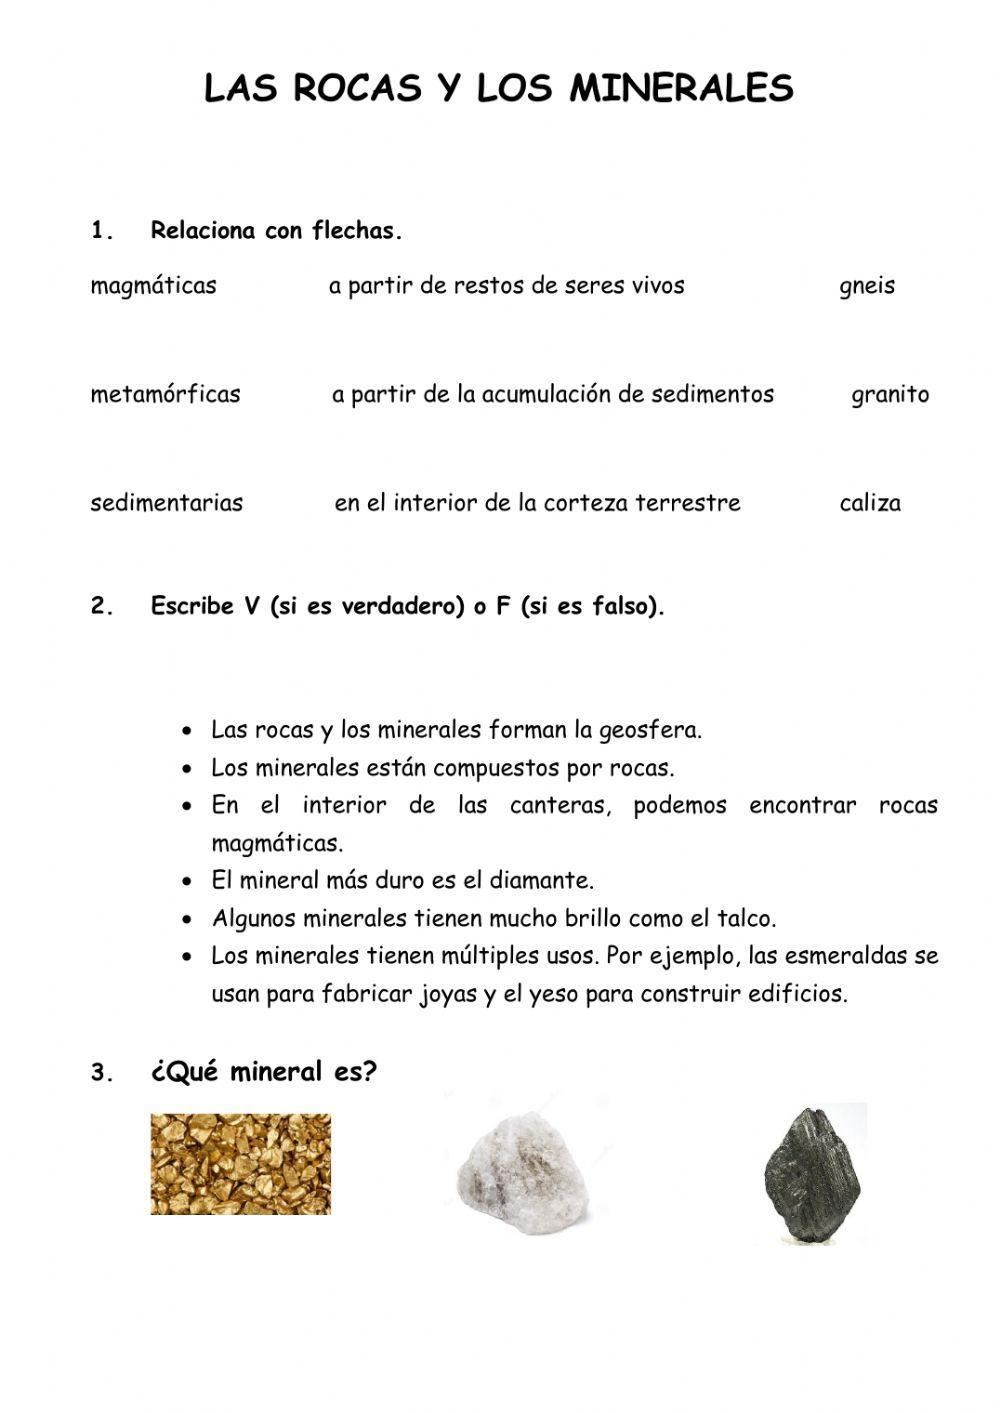 Las rocas y los minerales